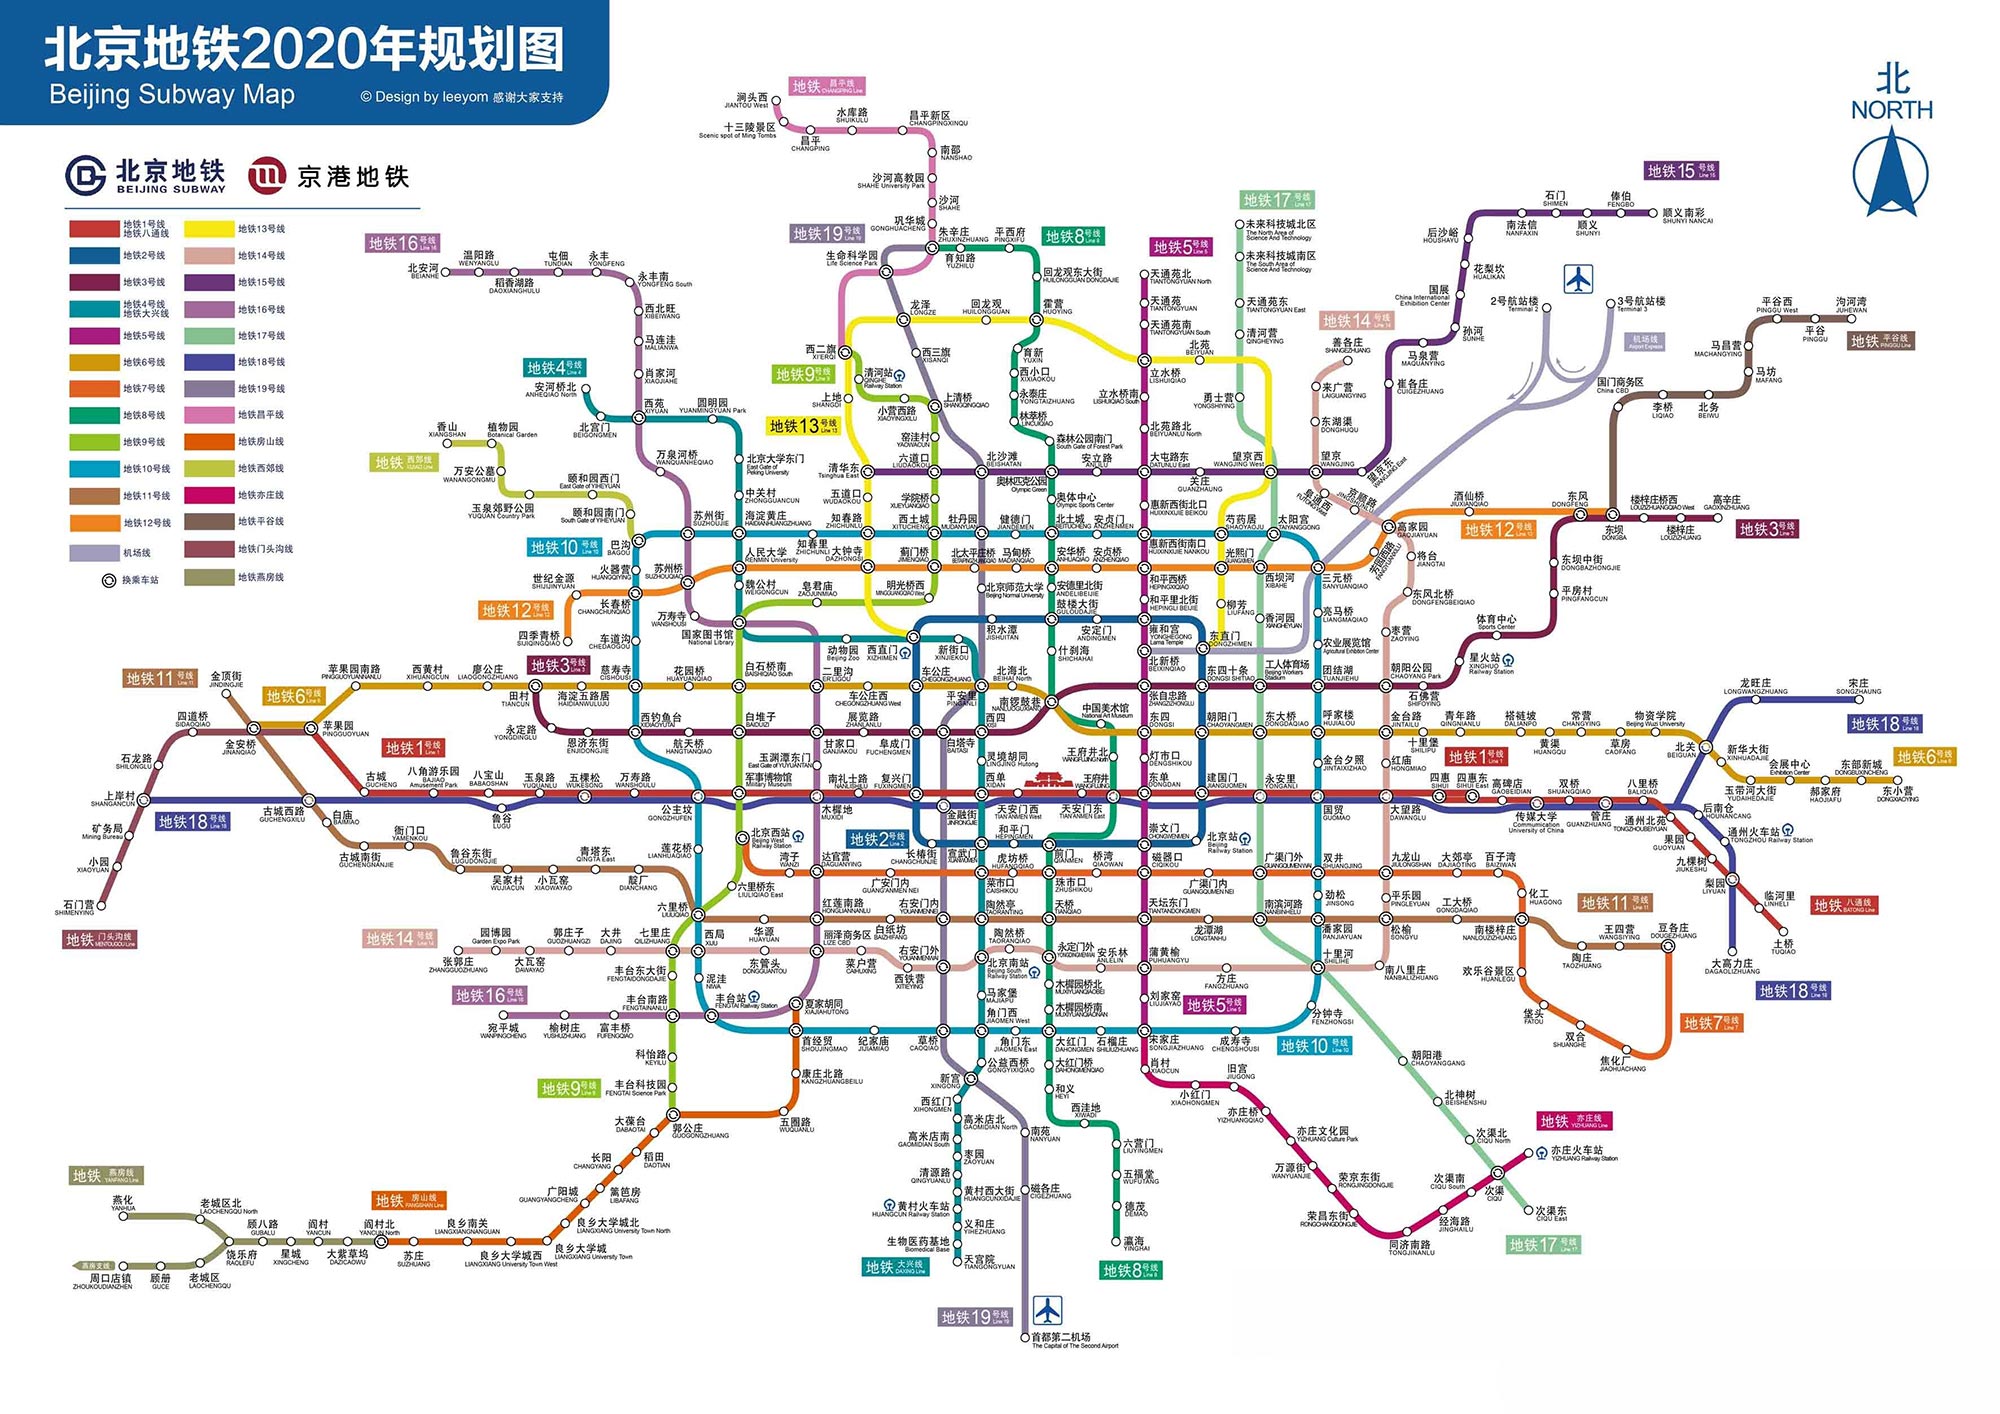 涿州地铁规划图 北京地铁新规划获批:新增三条线路 投资707亿